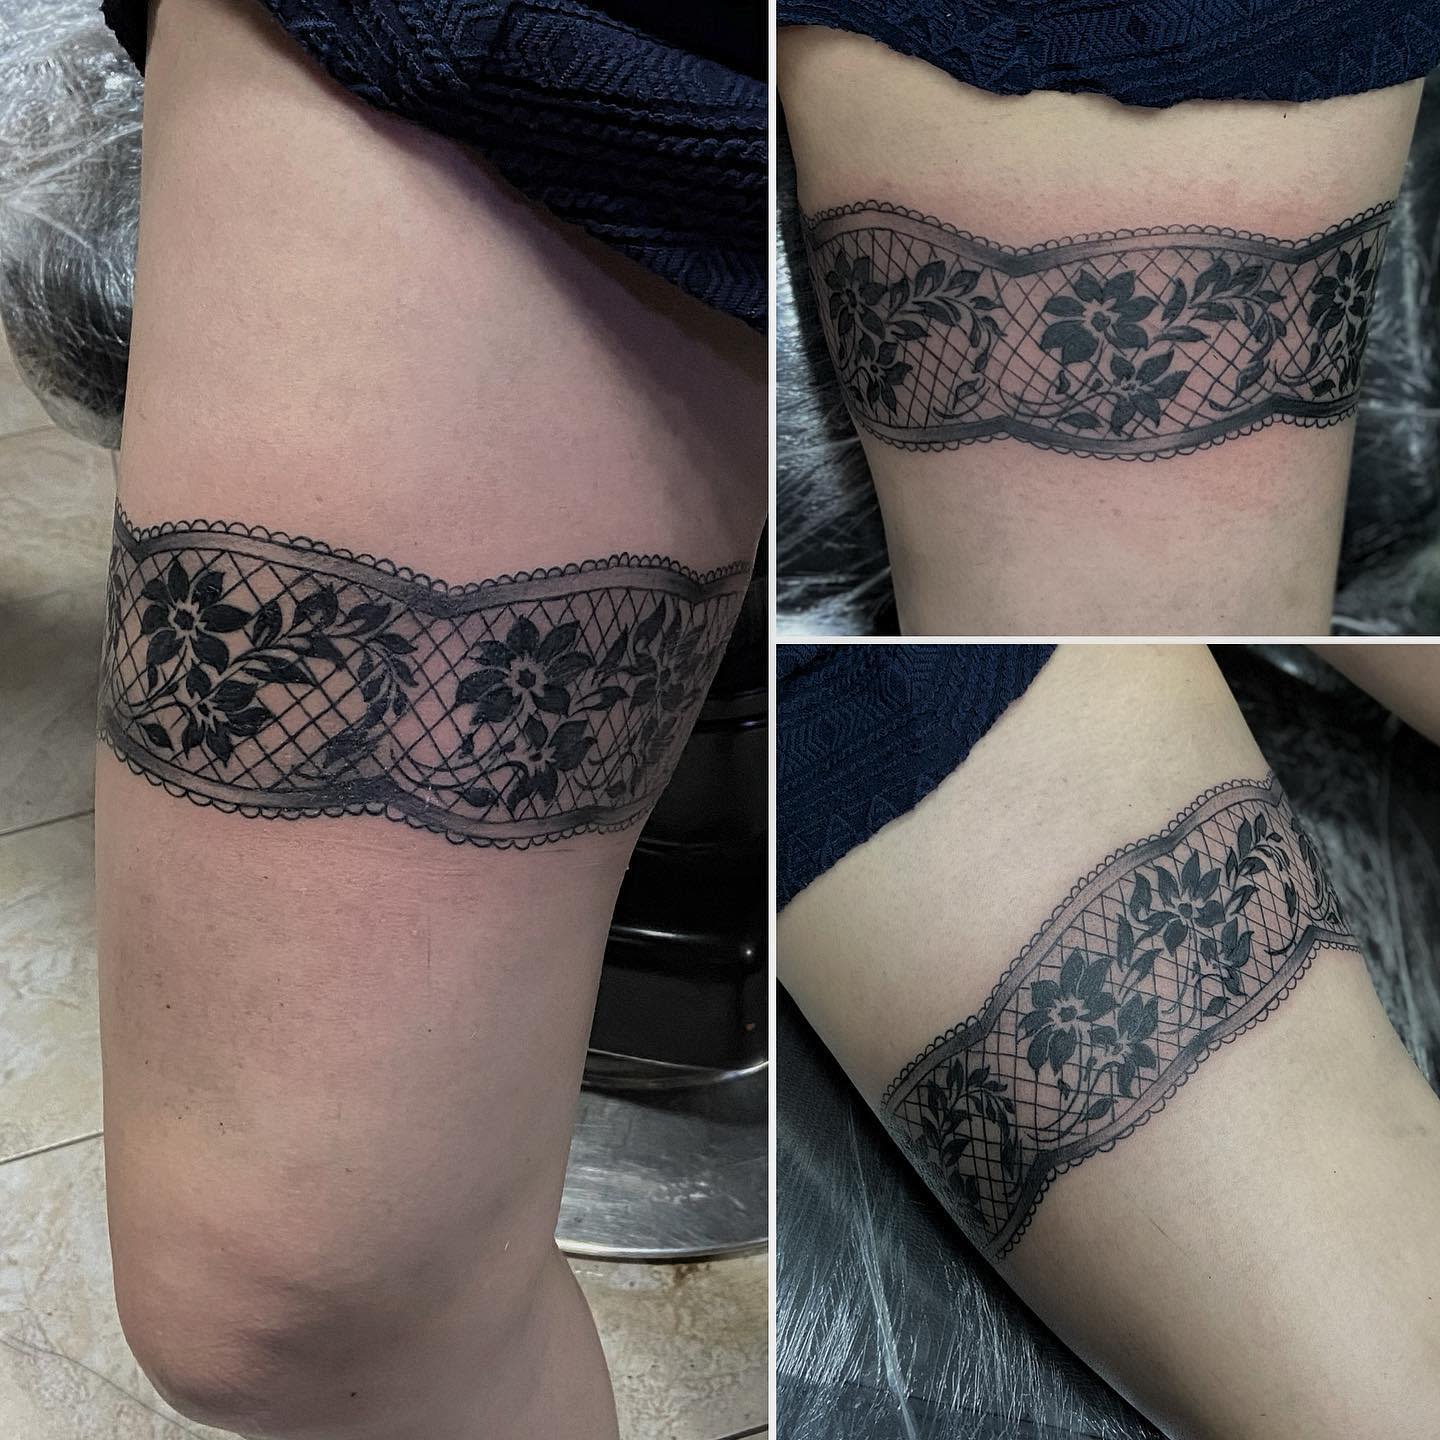 Lace Garter Tattoo -tattoosagittarius